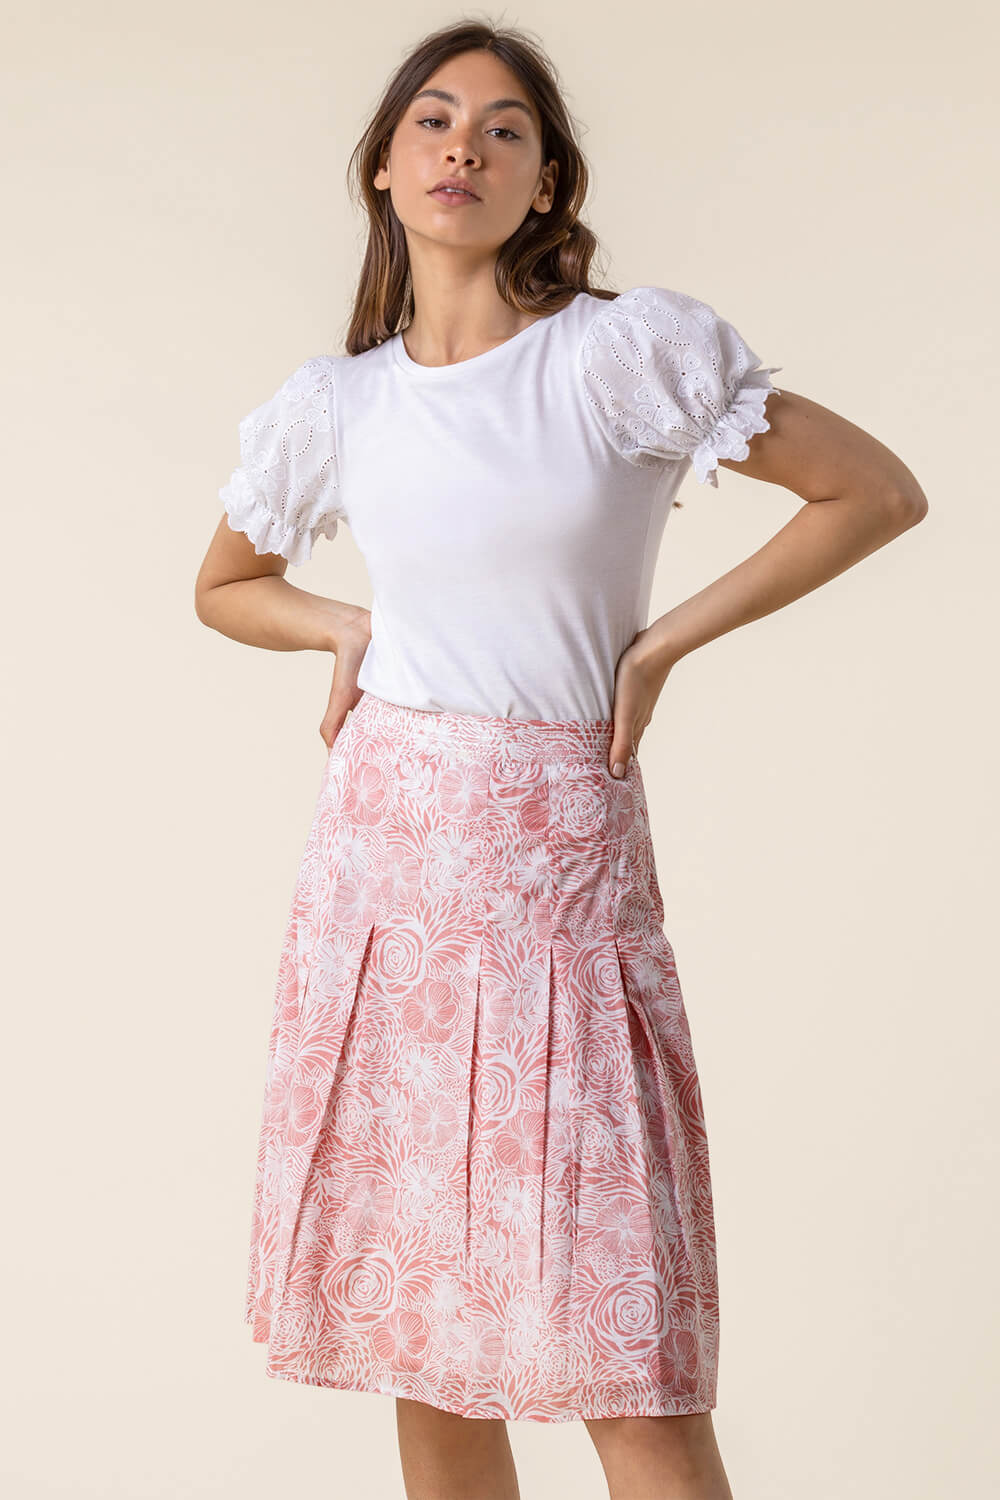 Floral Print A-Line Cotton Skirt